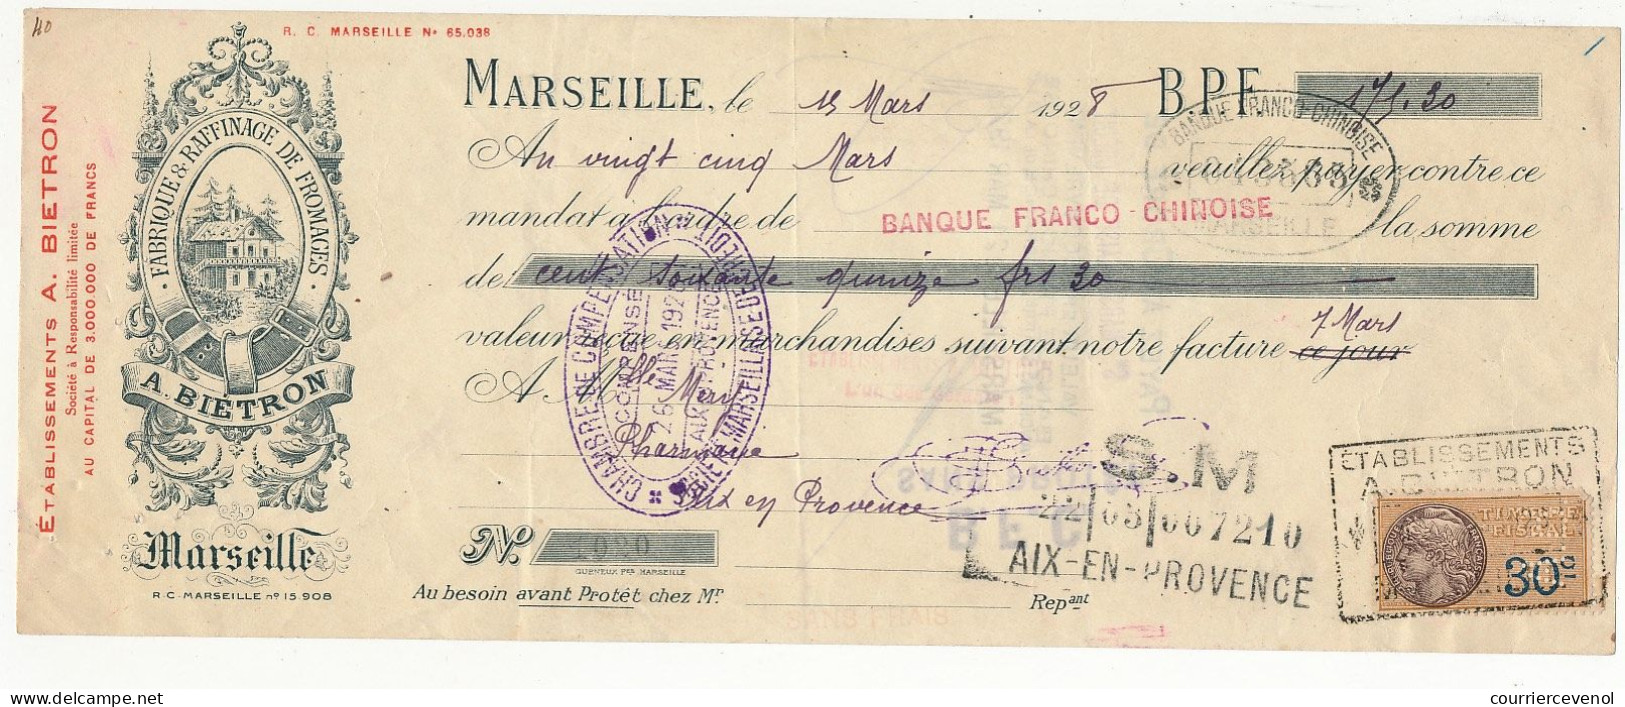 FRANCE - Traite A. Biétron (Fromages, Marseille) - Fiscal 30c Perforé A.B. - 1928 - Lettres & Documents